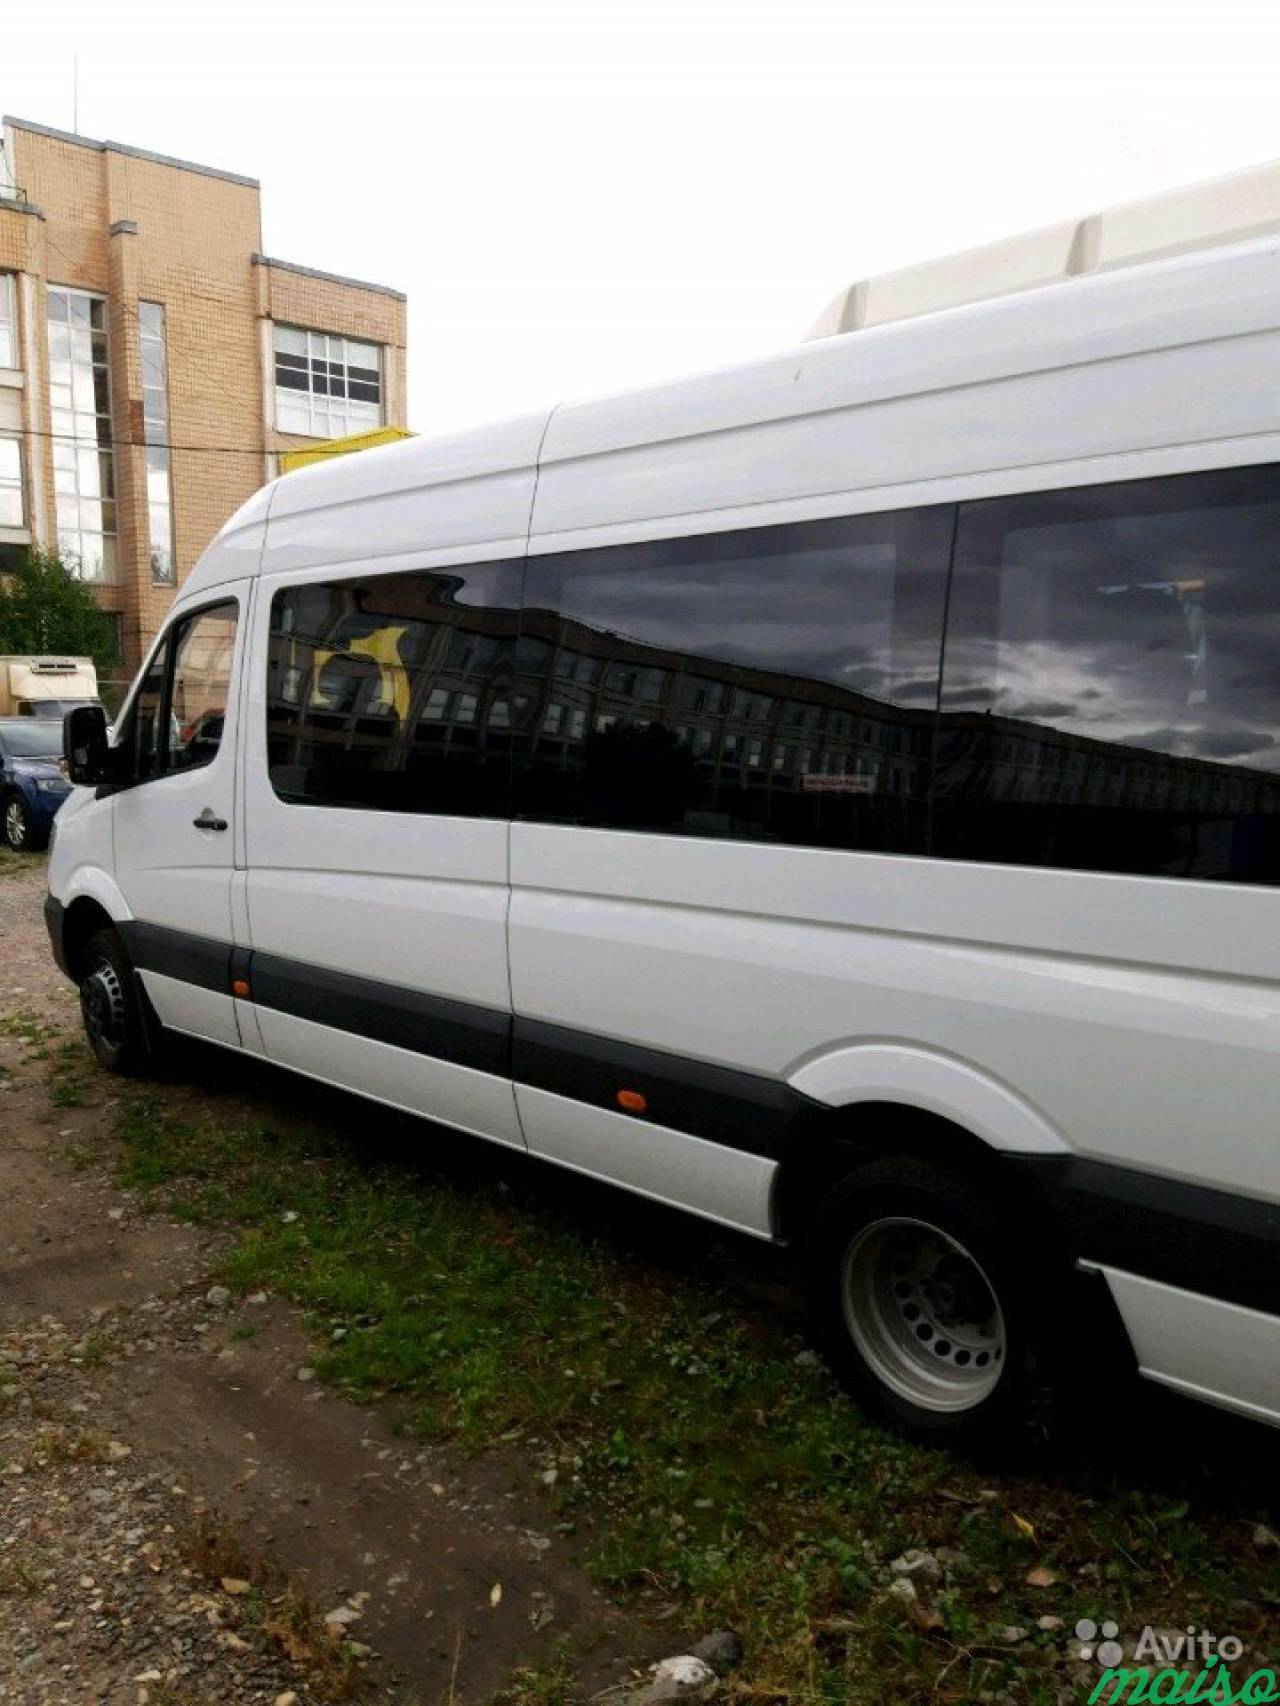 Продажа автобуса в Санкт-Петербурге. Фото 1